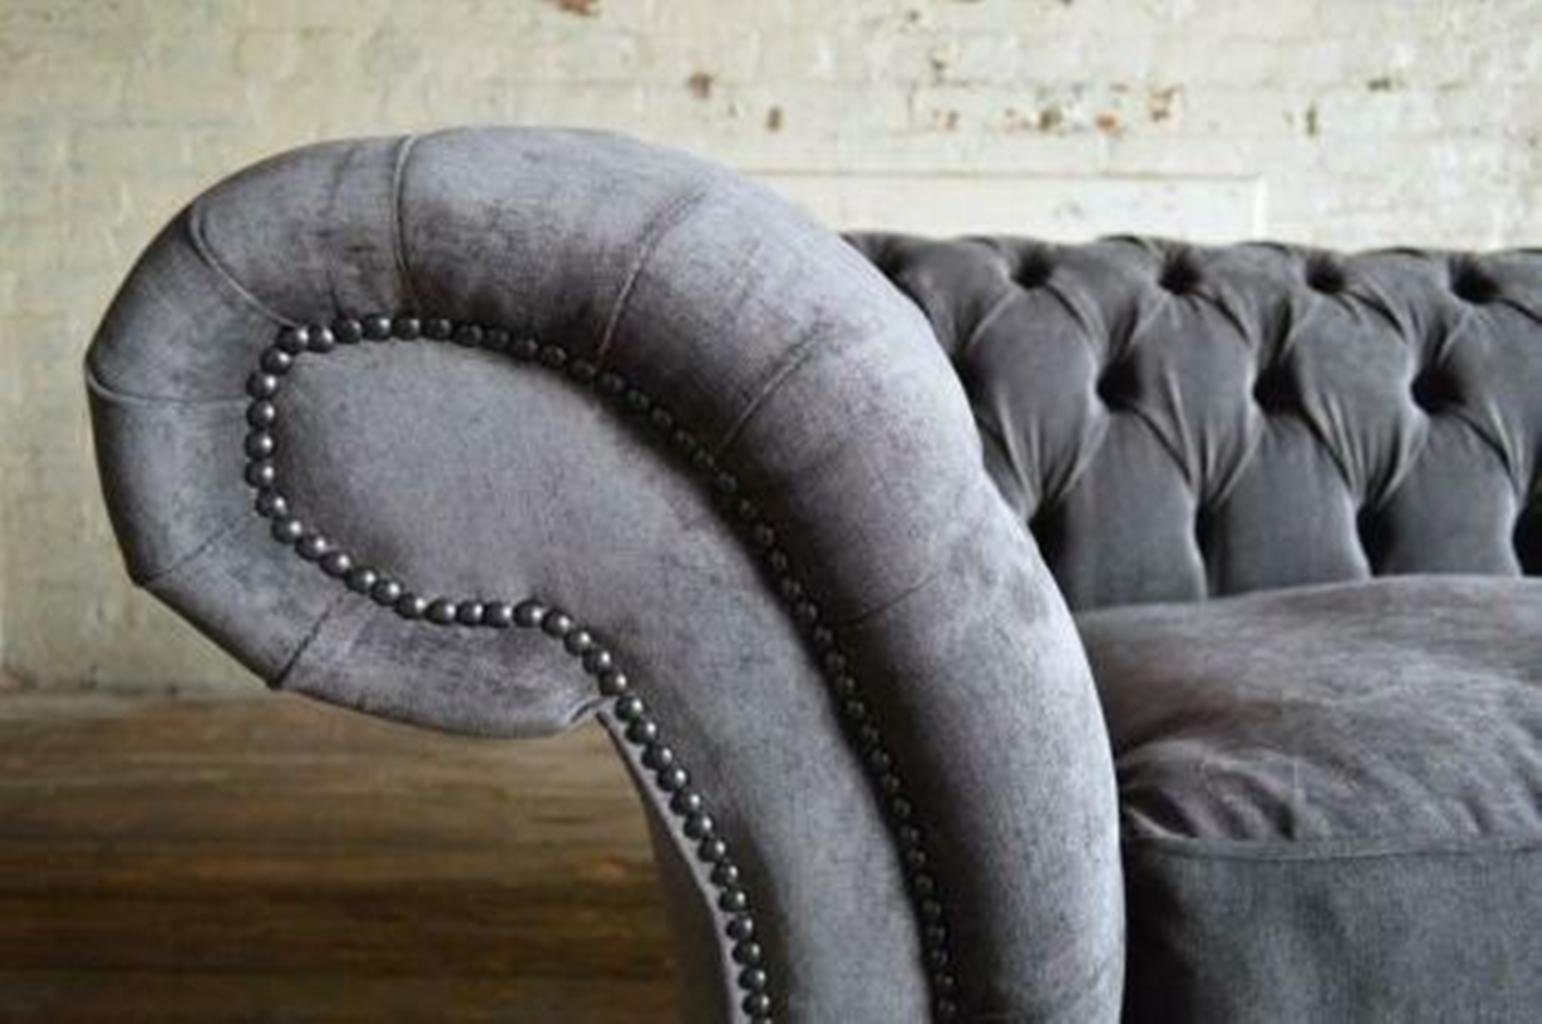 Design Couch Chesterfield-Sofa Chesterfield Luxus Grauer Polstermöbel Neu, Dreisitzer Made JVmoebel in Europe